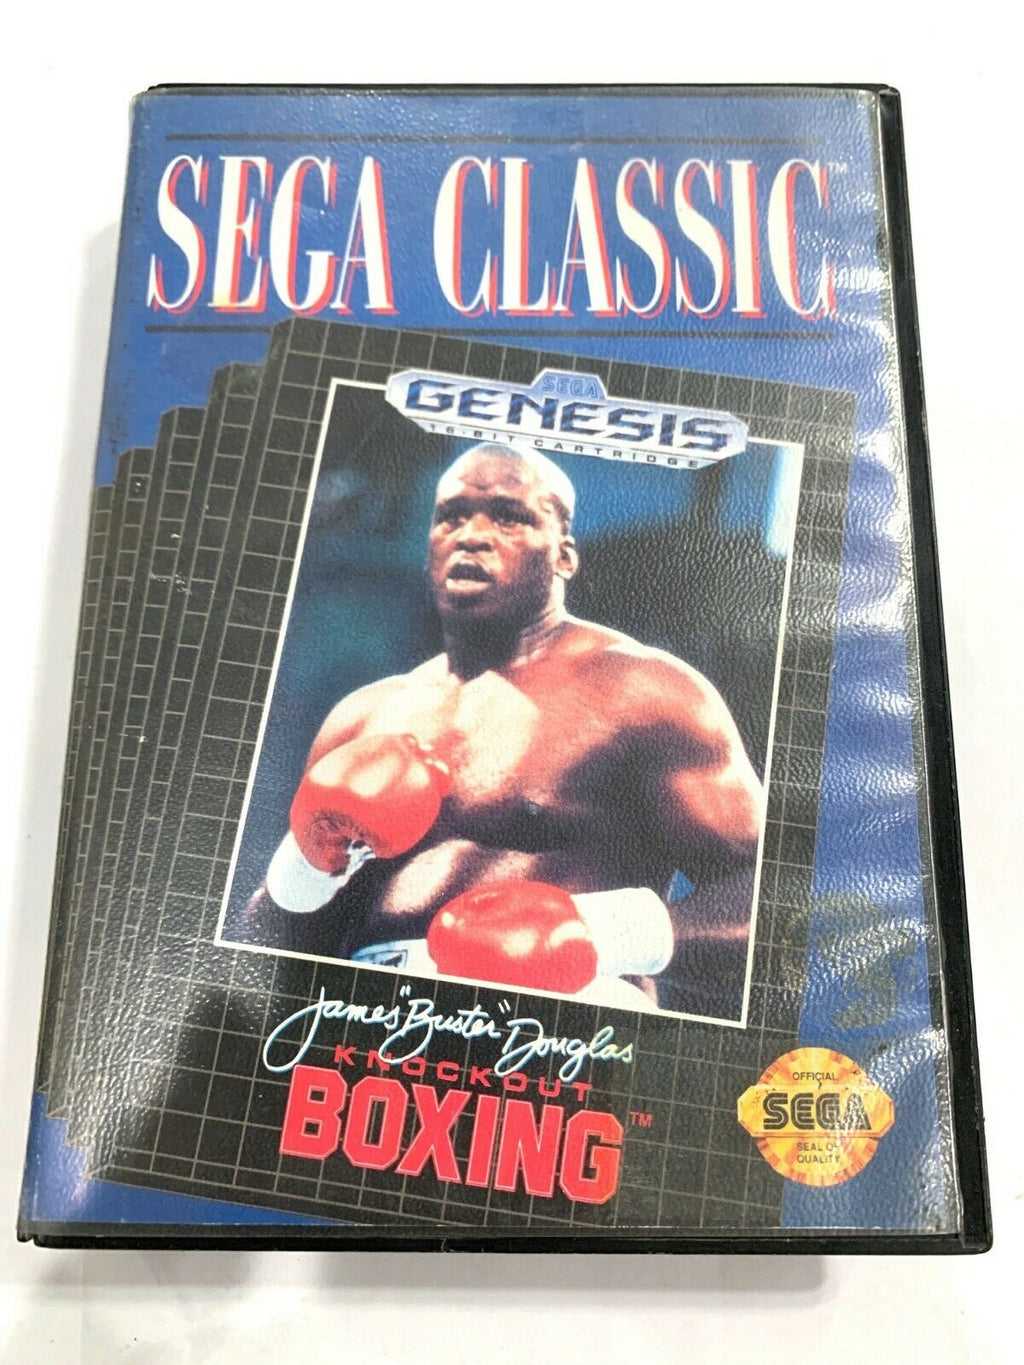 James Buster Douglas Knockout Boxing (GEN, 1990) - Sega Does